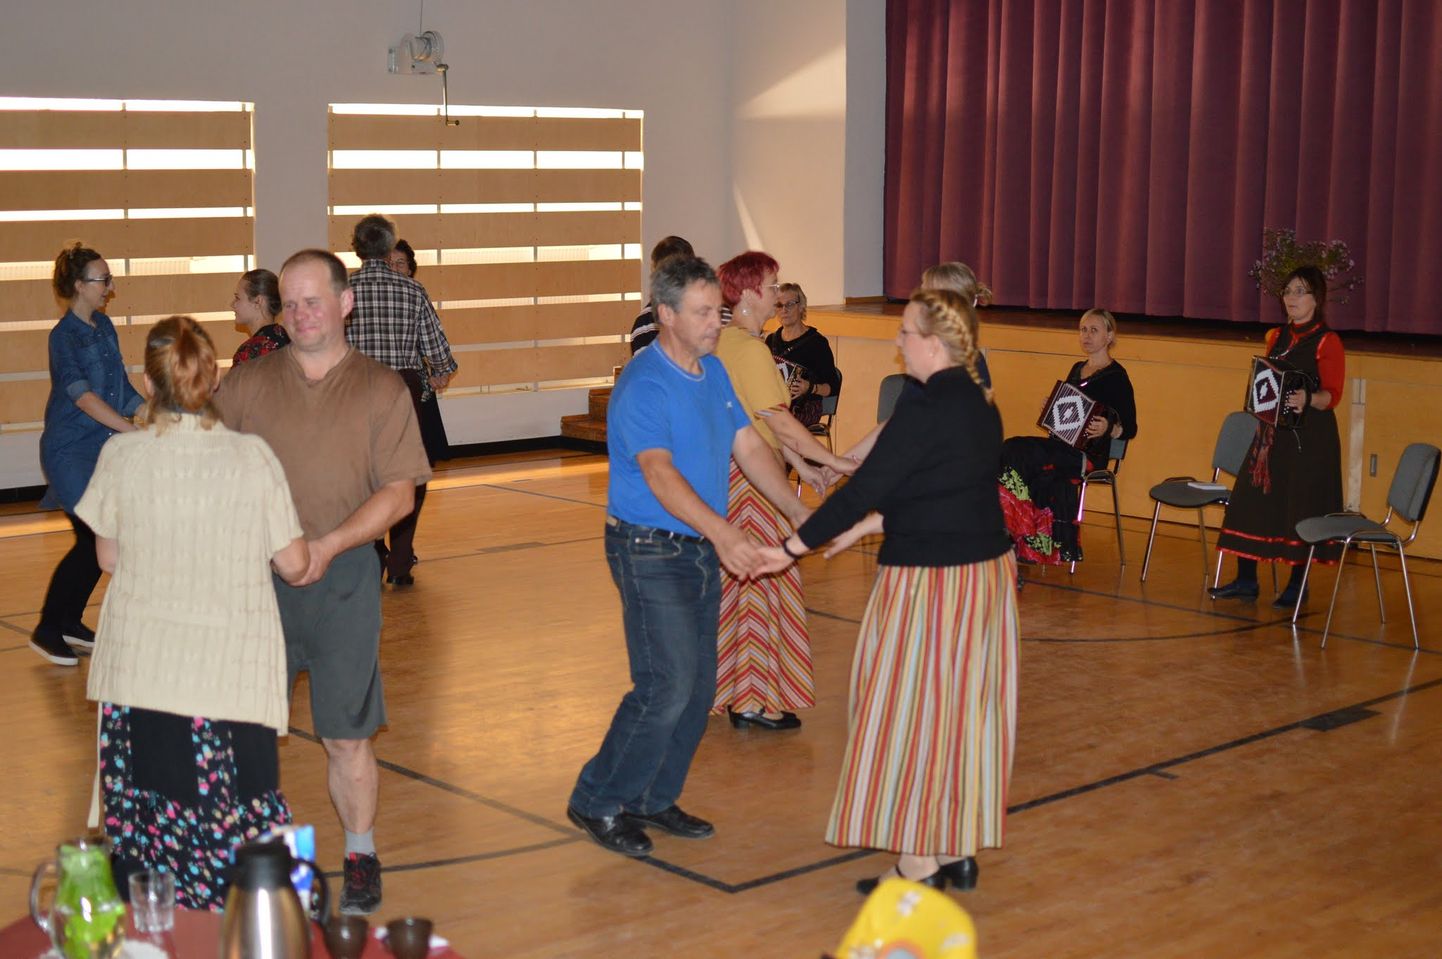 Albu kandi rahvas koguneb iga kuu viimasel tööpäeval tantsutuppa, et ühiselt vanu seltskonnatantse tantsida.